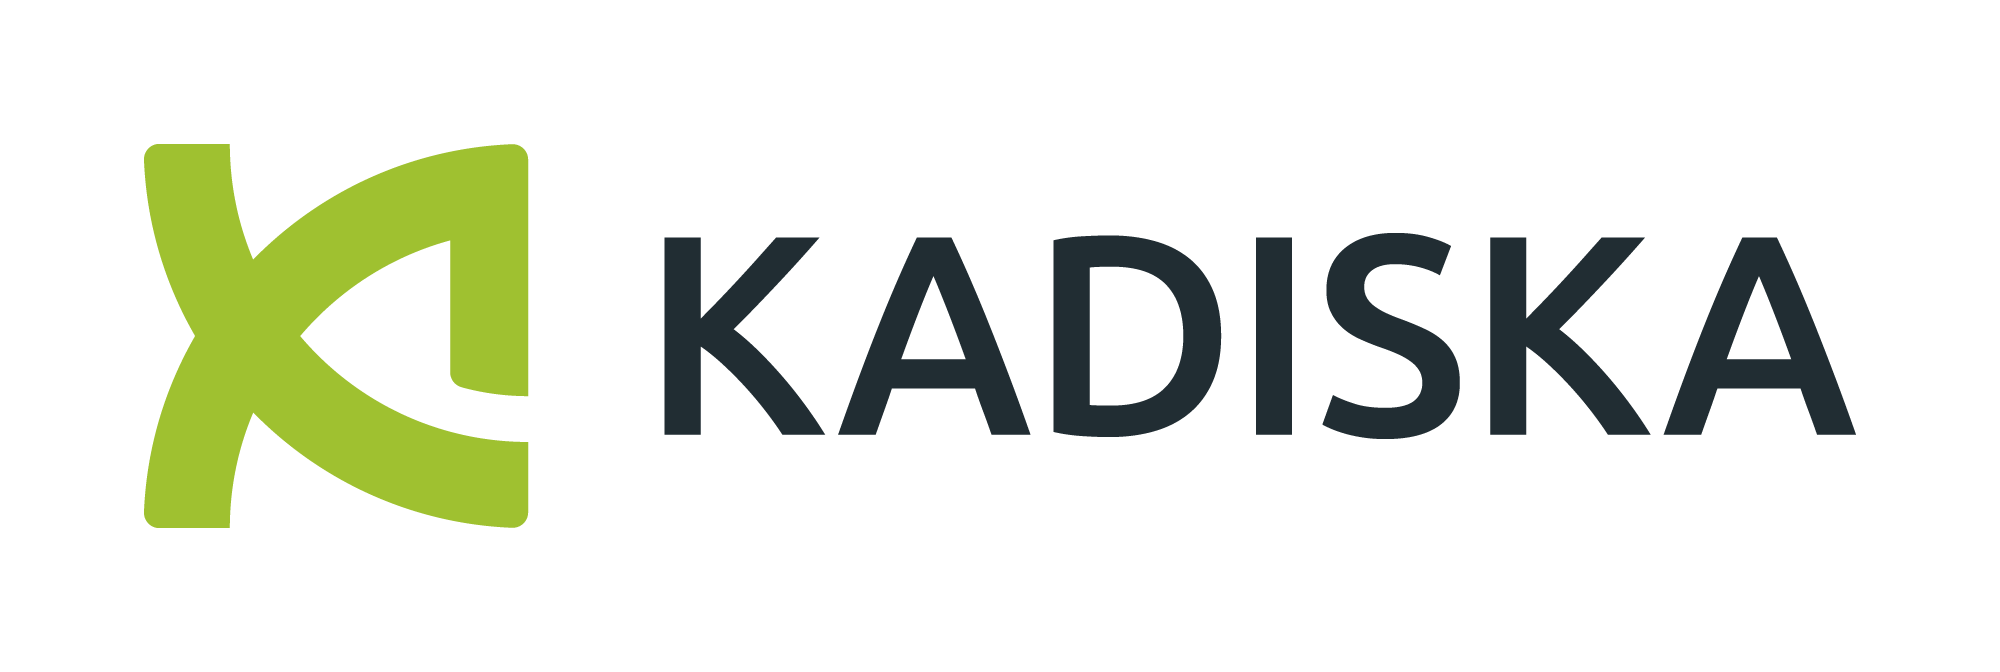 Kadiska offre une visibilité à 100 % sur l'expérience numérique des applications SaaS et cloud modernes telles que les utilisateurs les vivent réellement. 